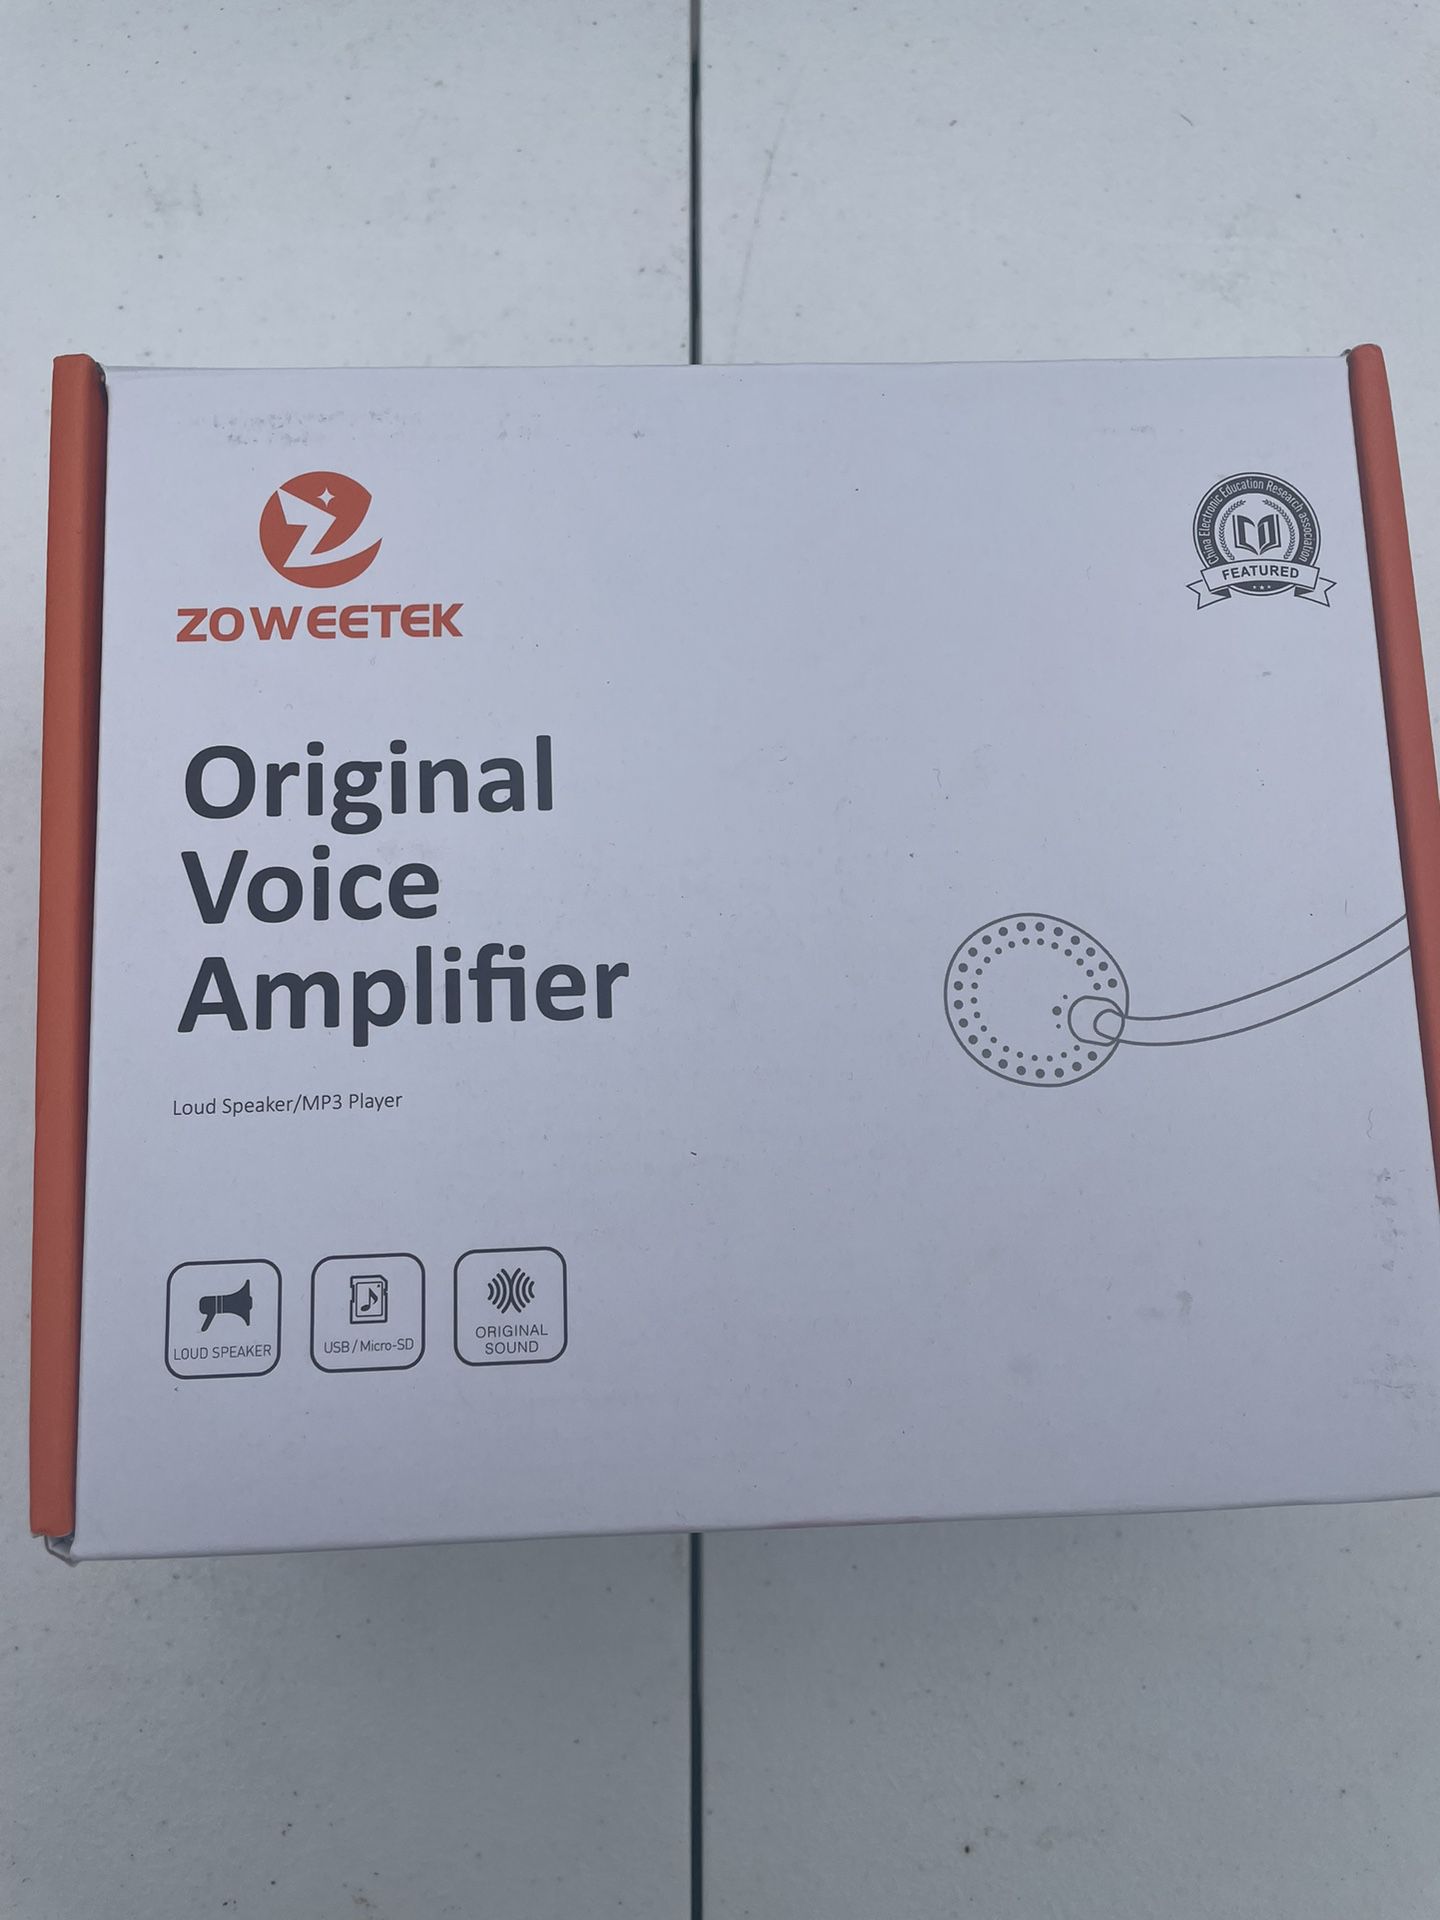 Voice Amplifier